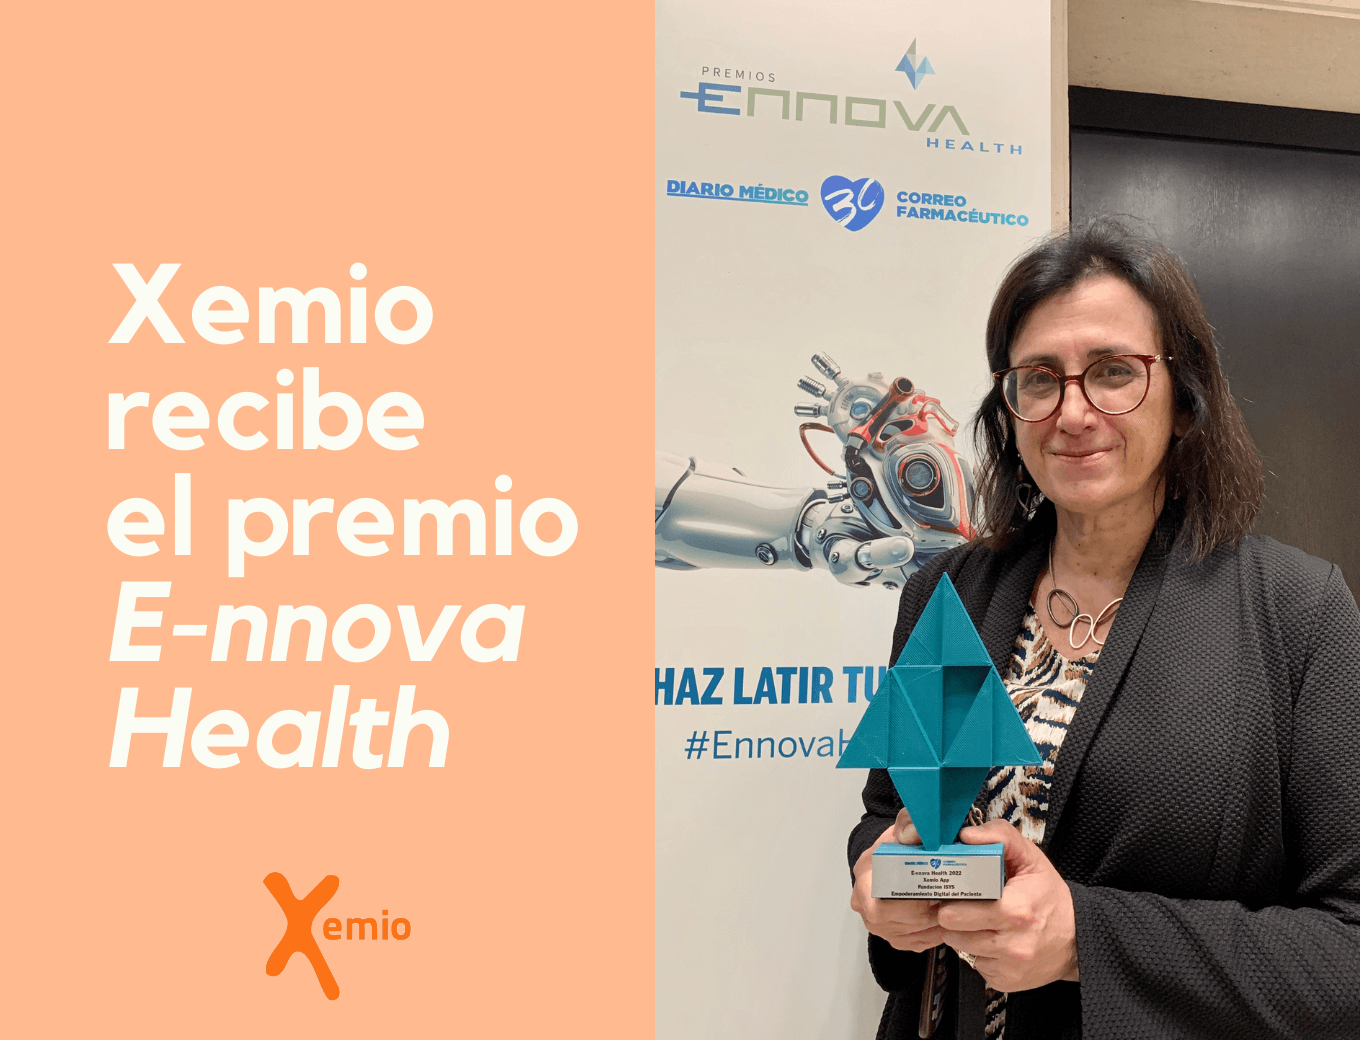 Xemio recibe el premio “E-nnova Health” en la categoría Empoderamiento Digital del Paciente